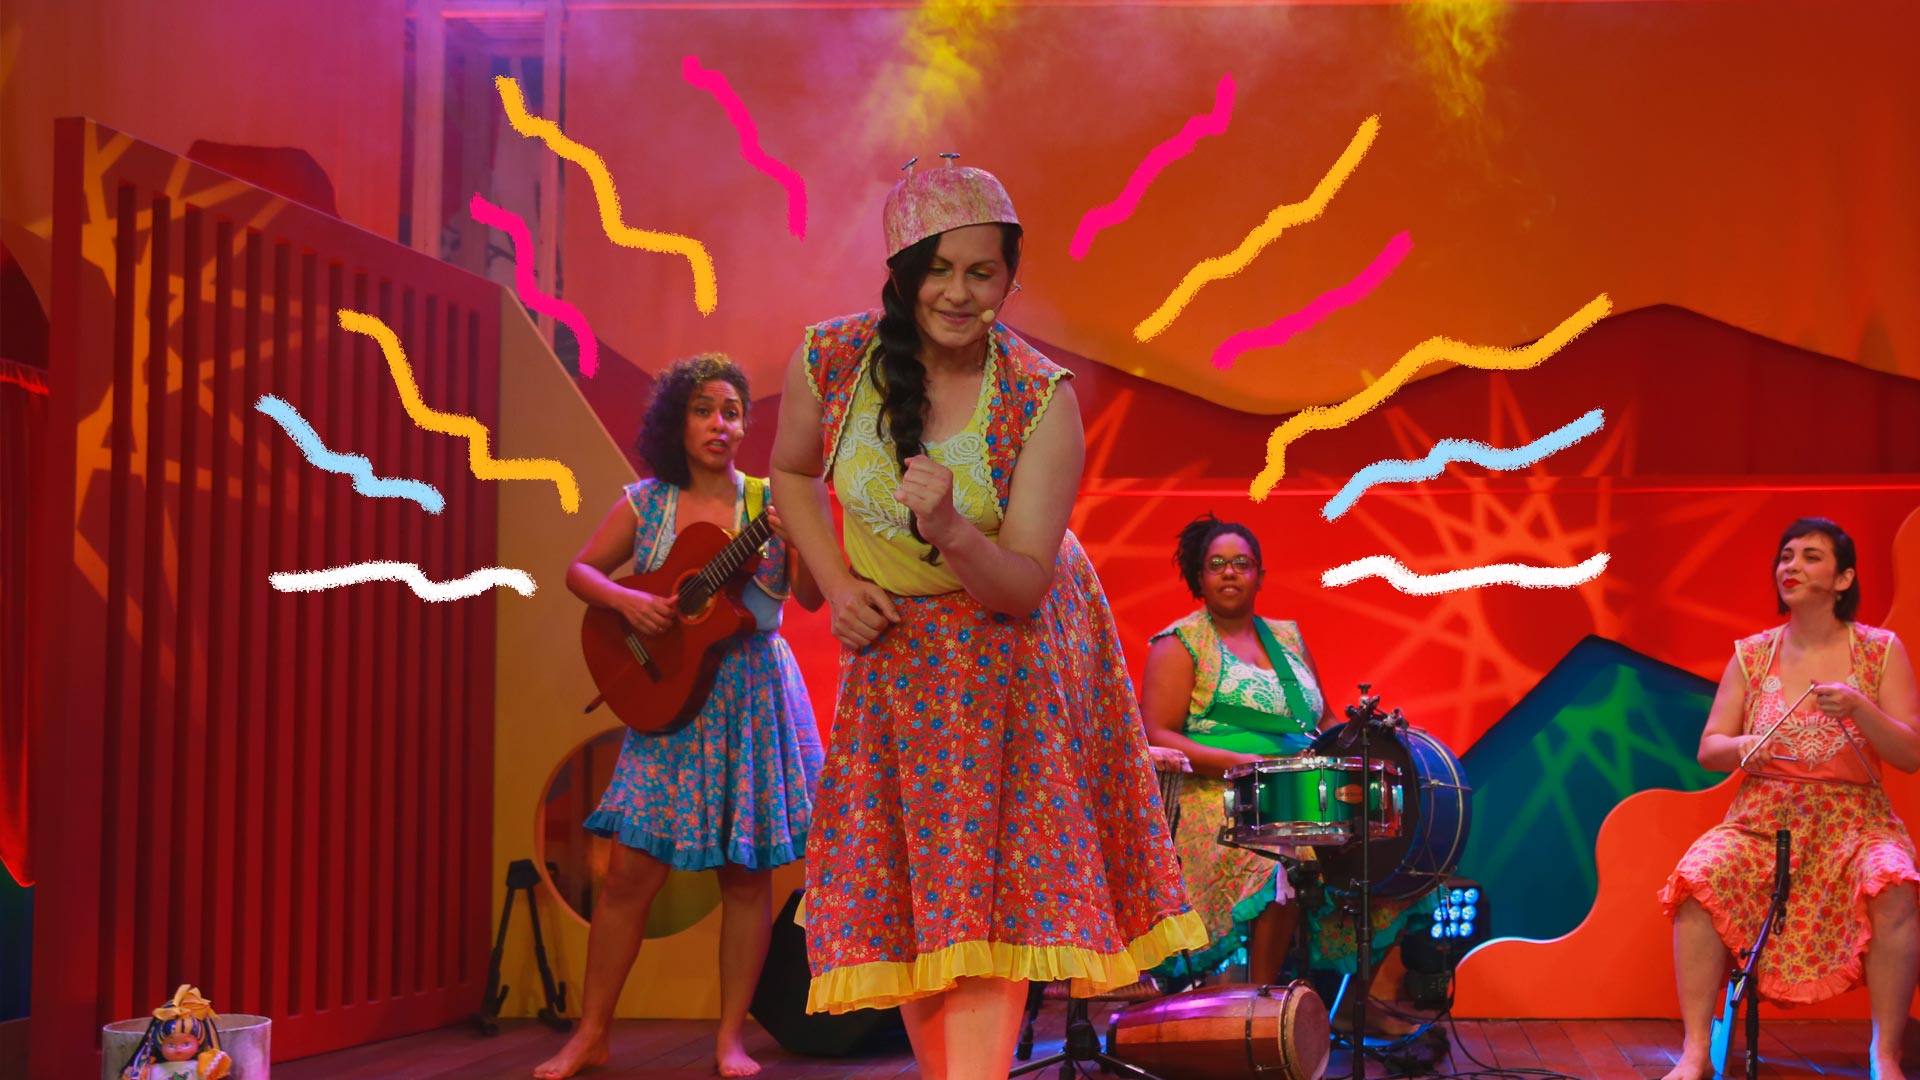 Quatro mulheres estão em um palco, dançando e tocando instrumentos musicais como violão, bateria e triãngulo. Todas elas estão vestindo roupas coloridas e saias de chita.